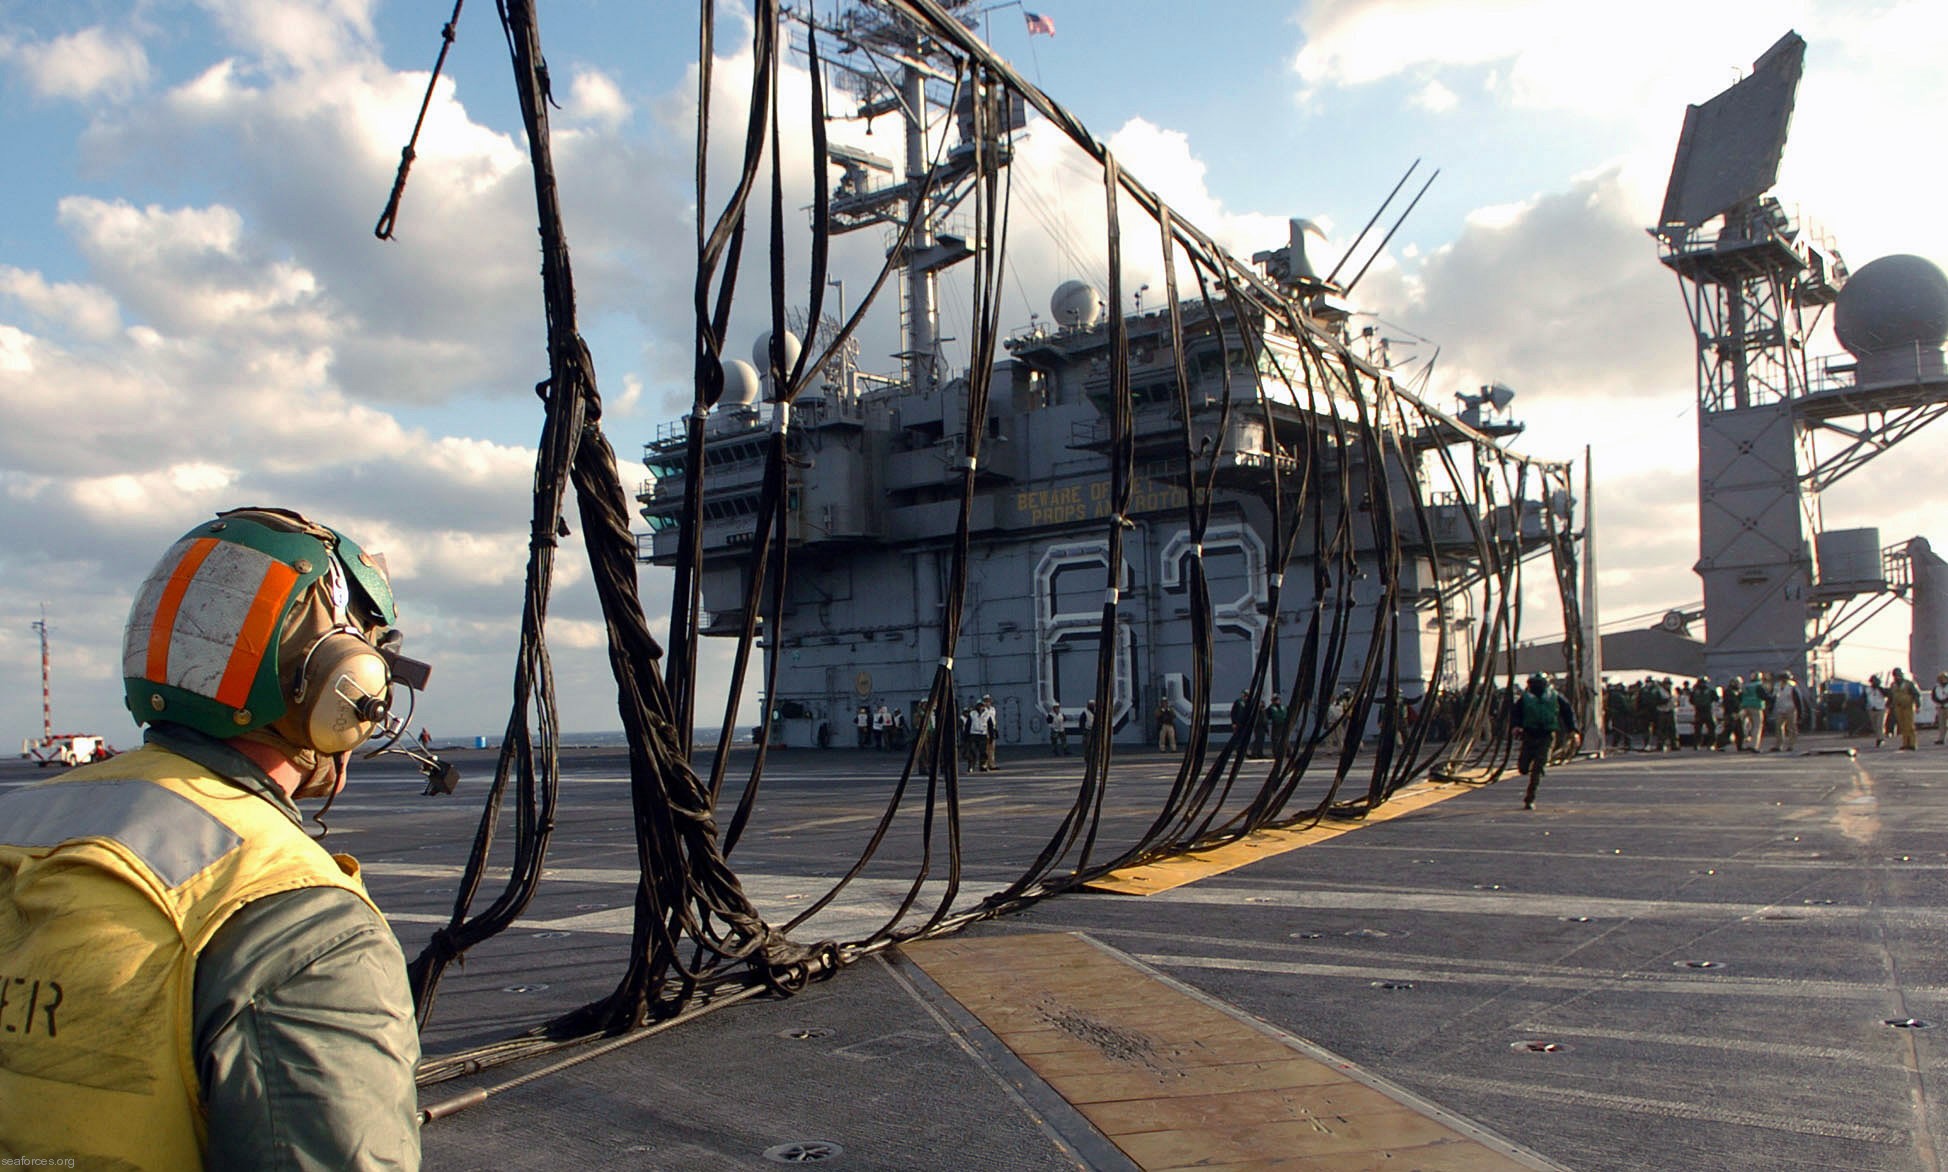 cv-63 uss kitty hawk aircraft carrier us navy 264 emergency landing barricade